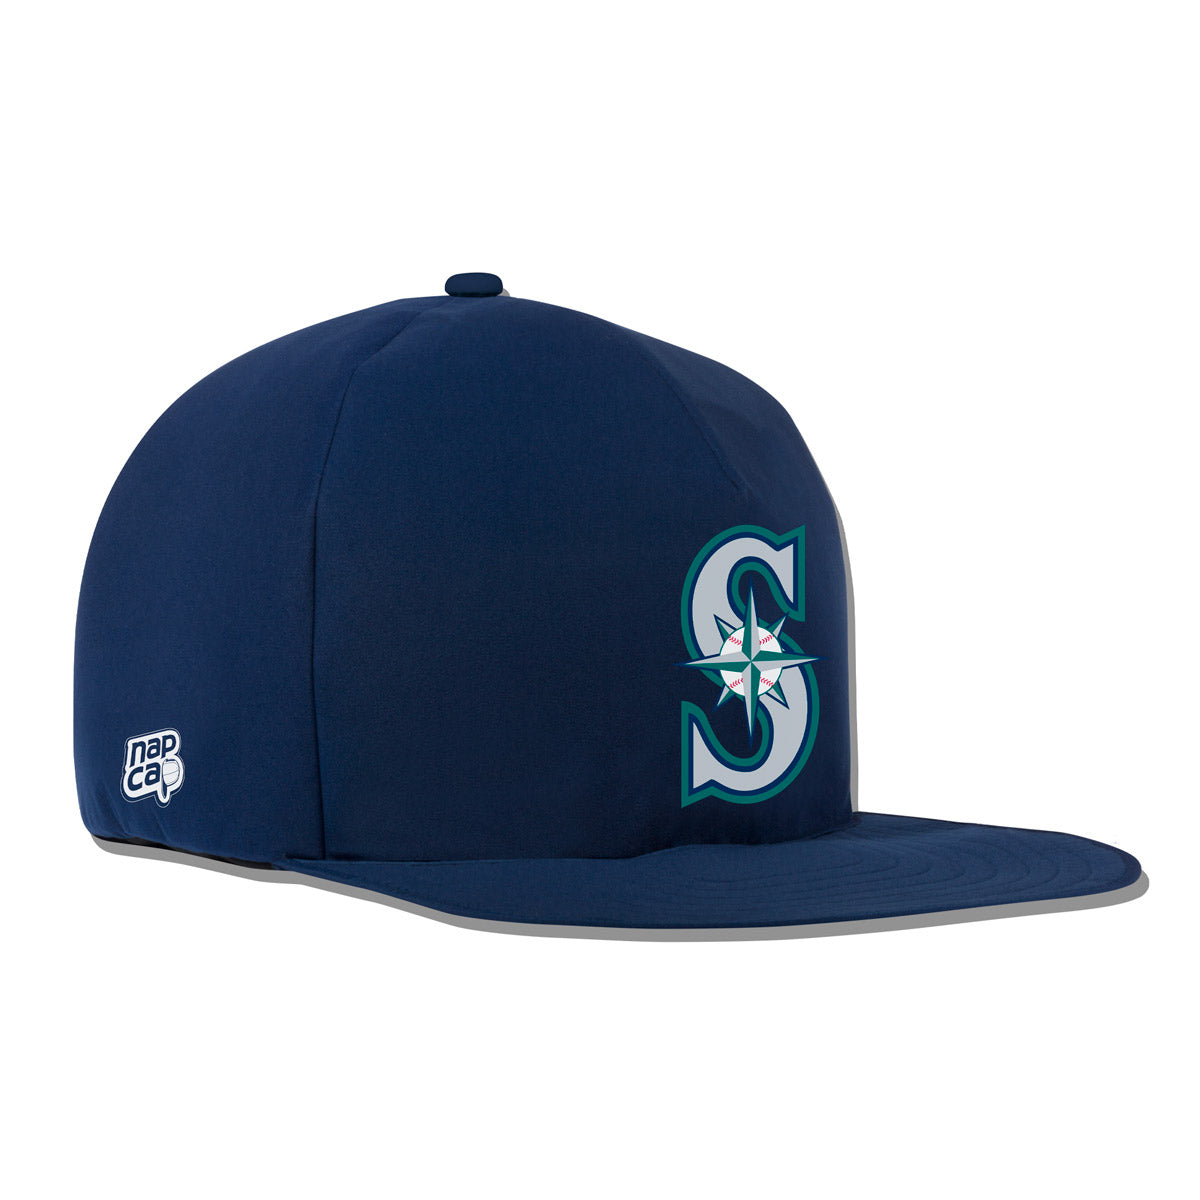 mariners baseball cap